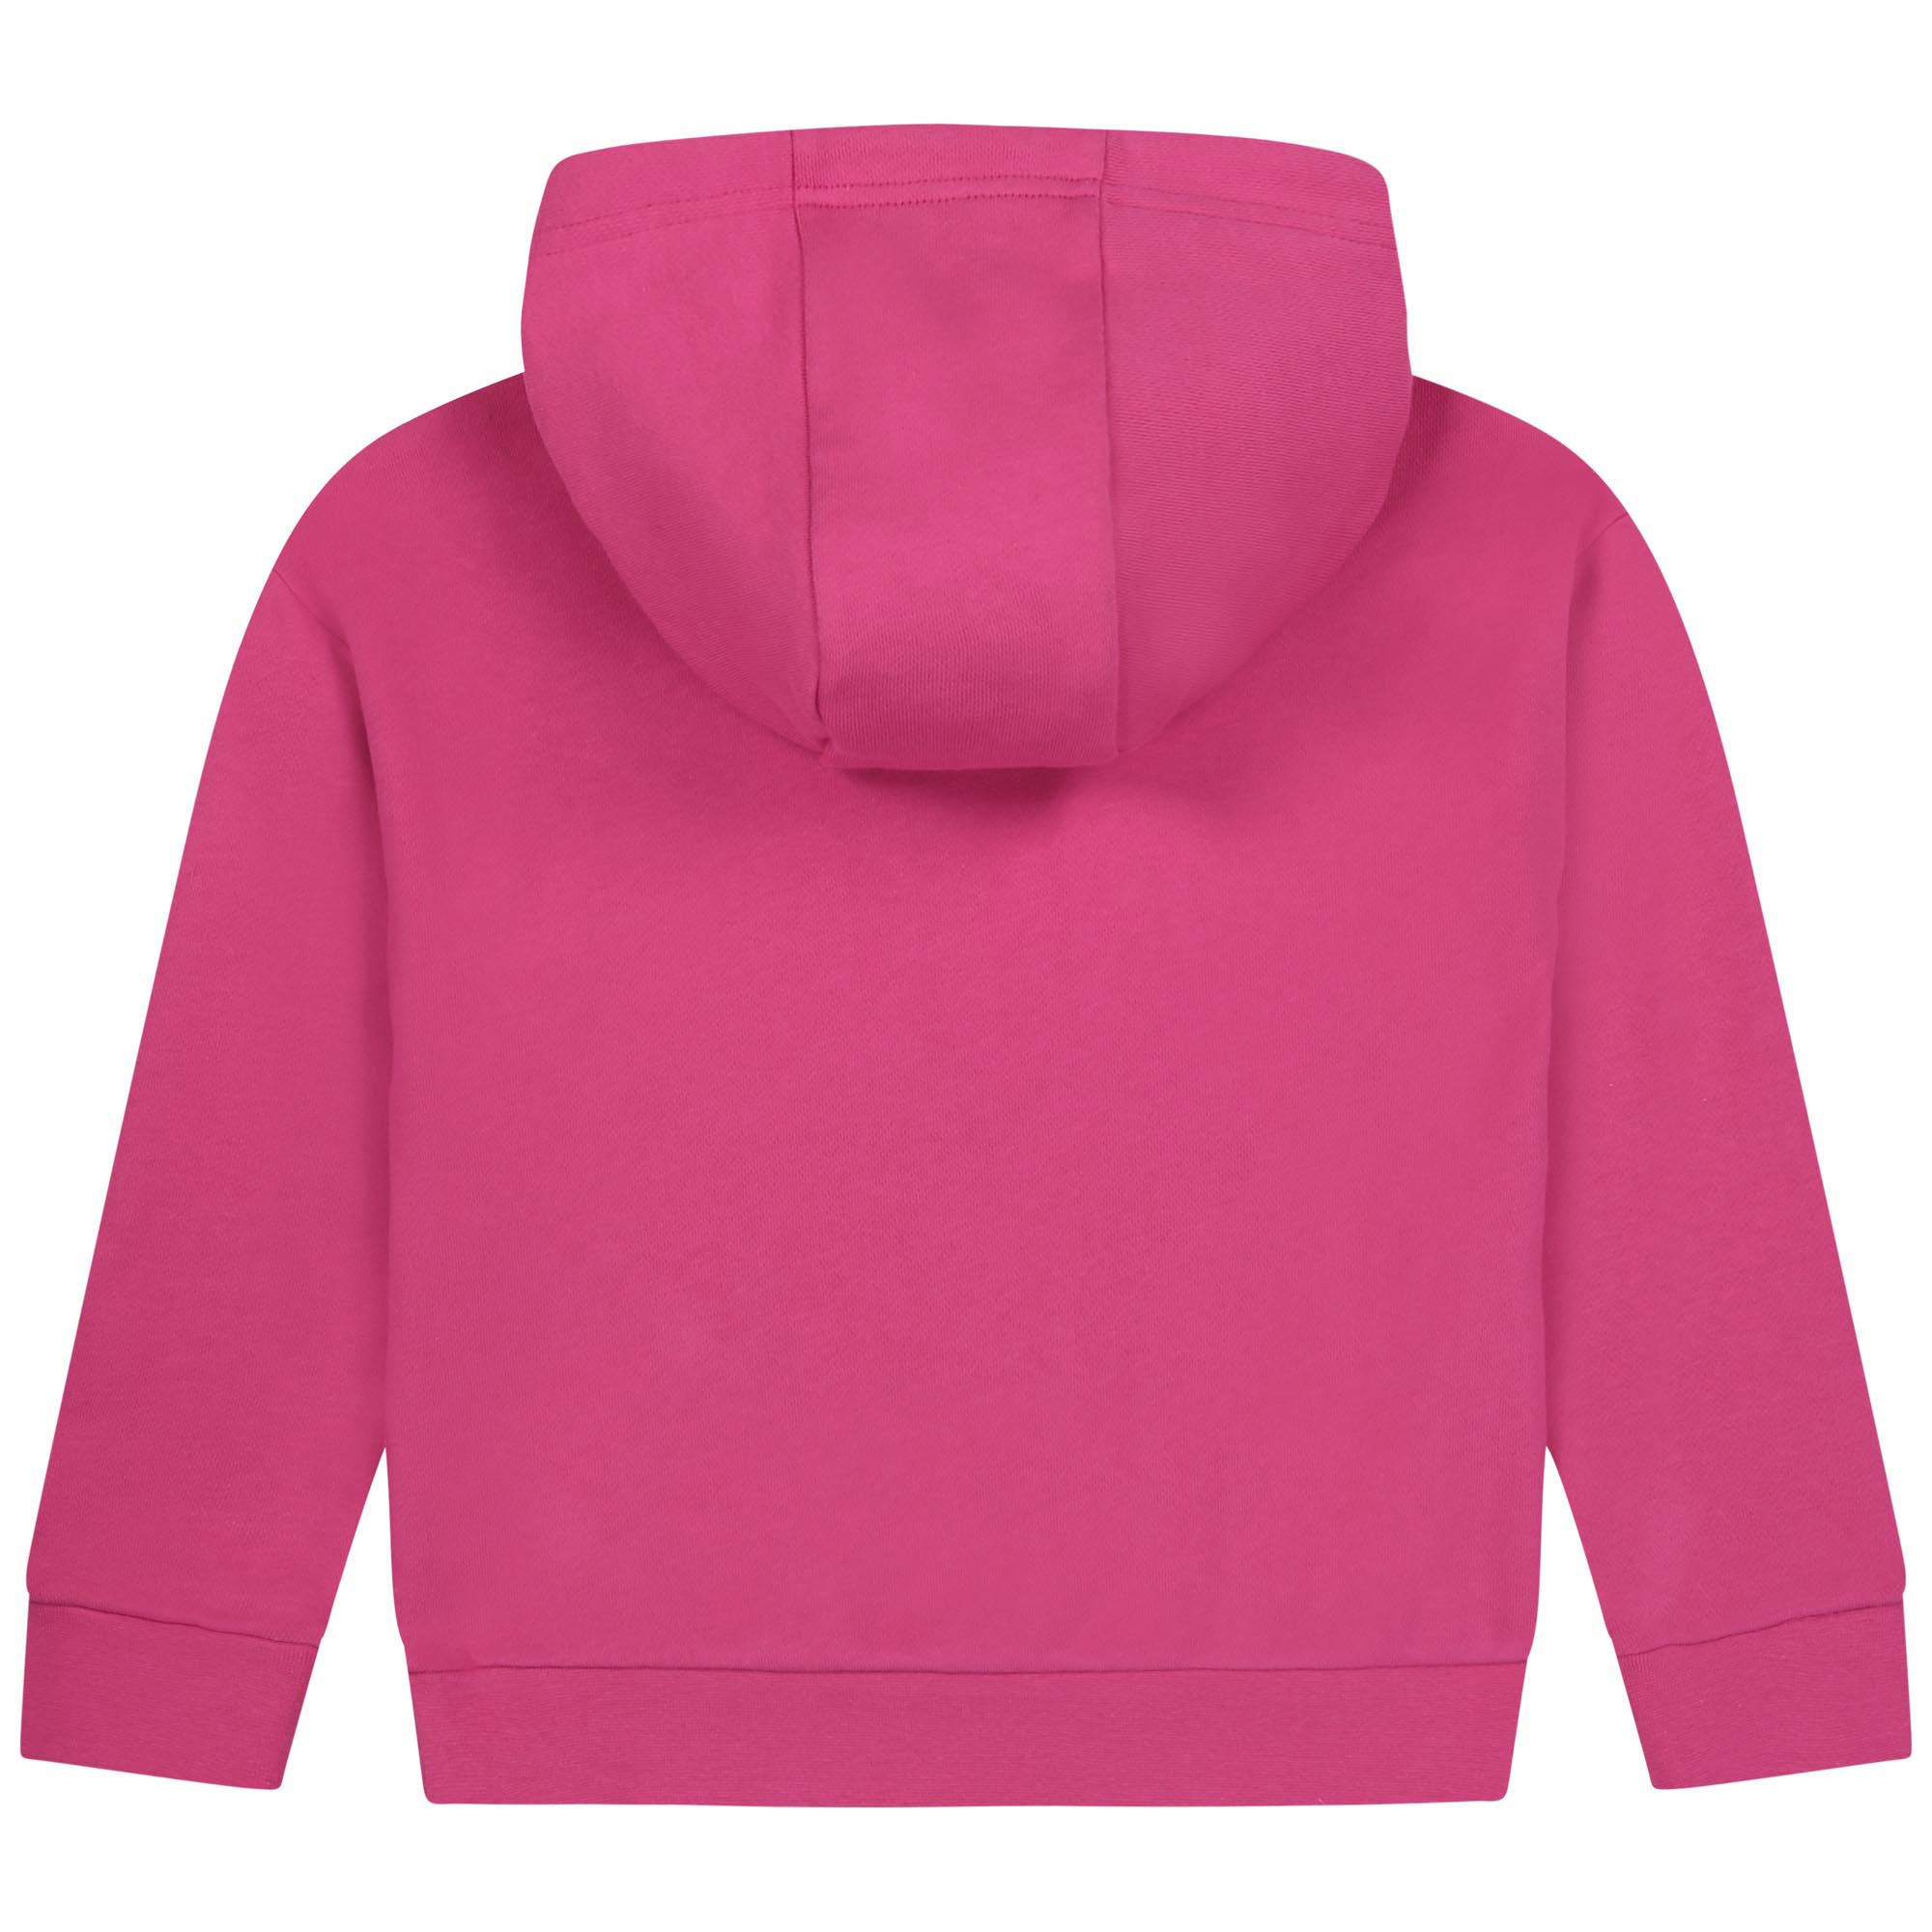 Embroidered fleece sweatshirt MICHAEL KORS for GIRL